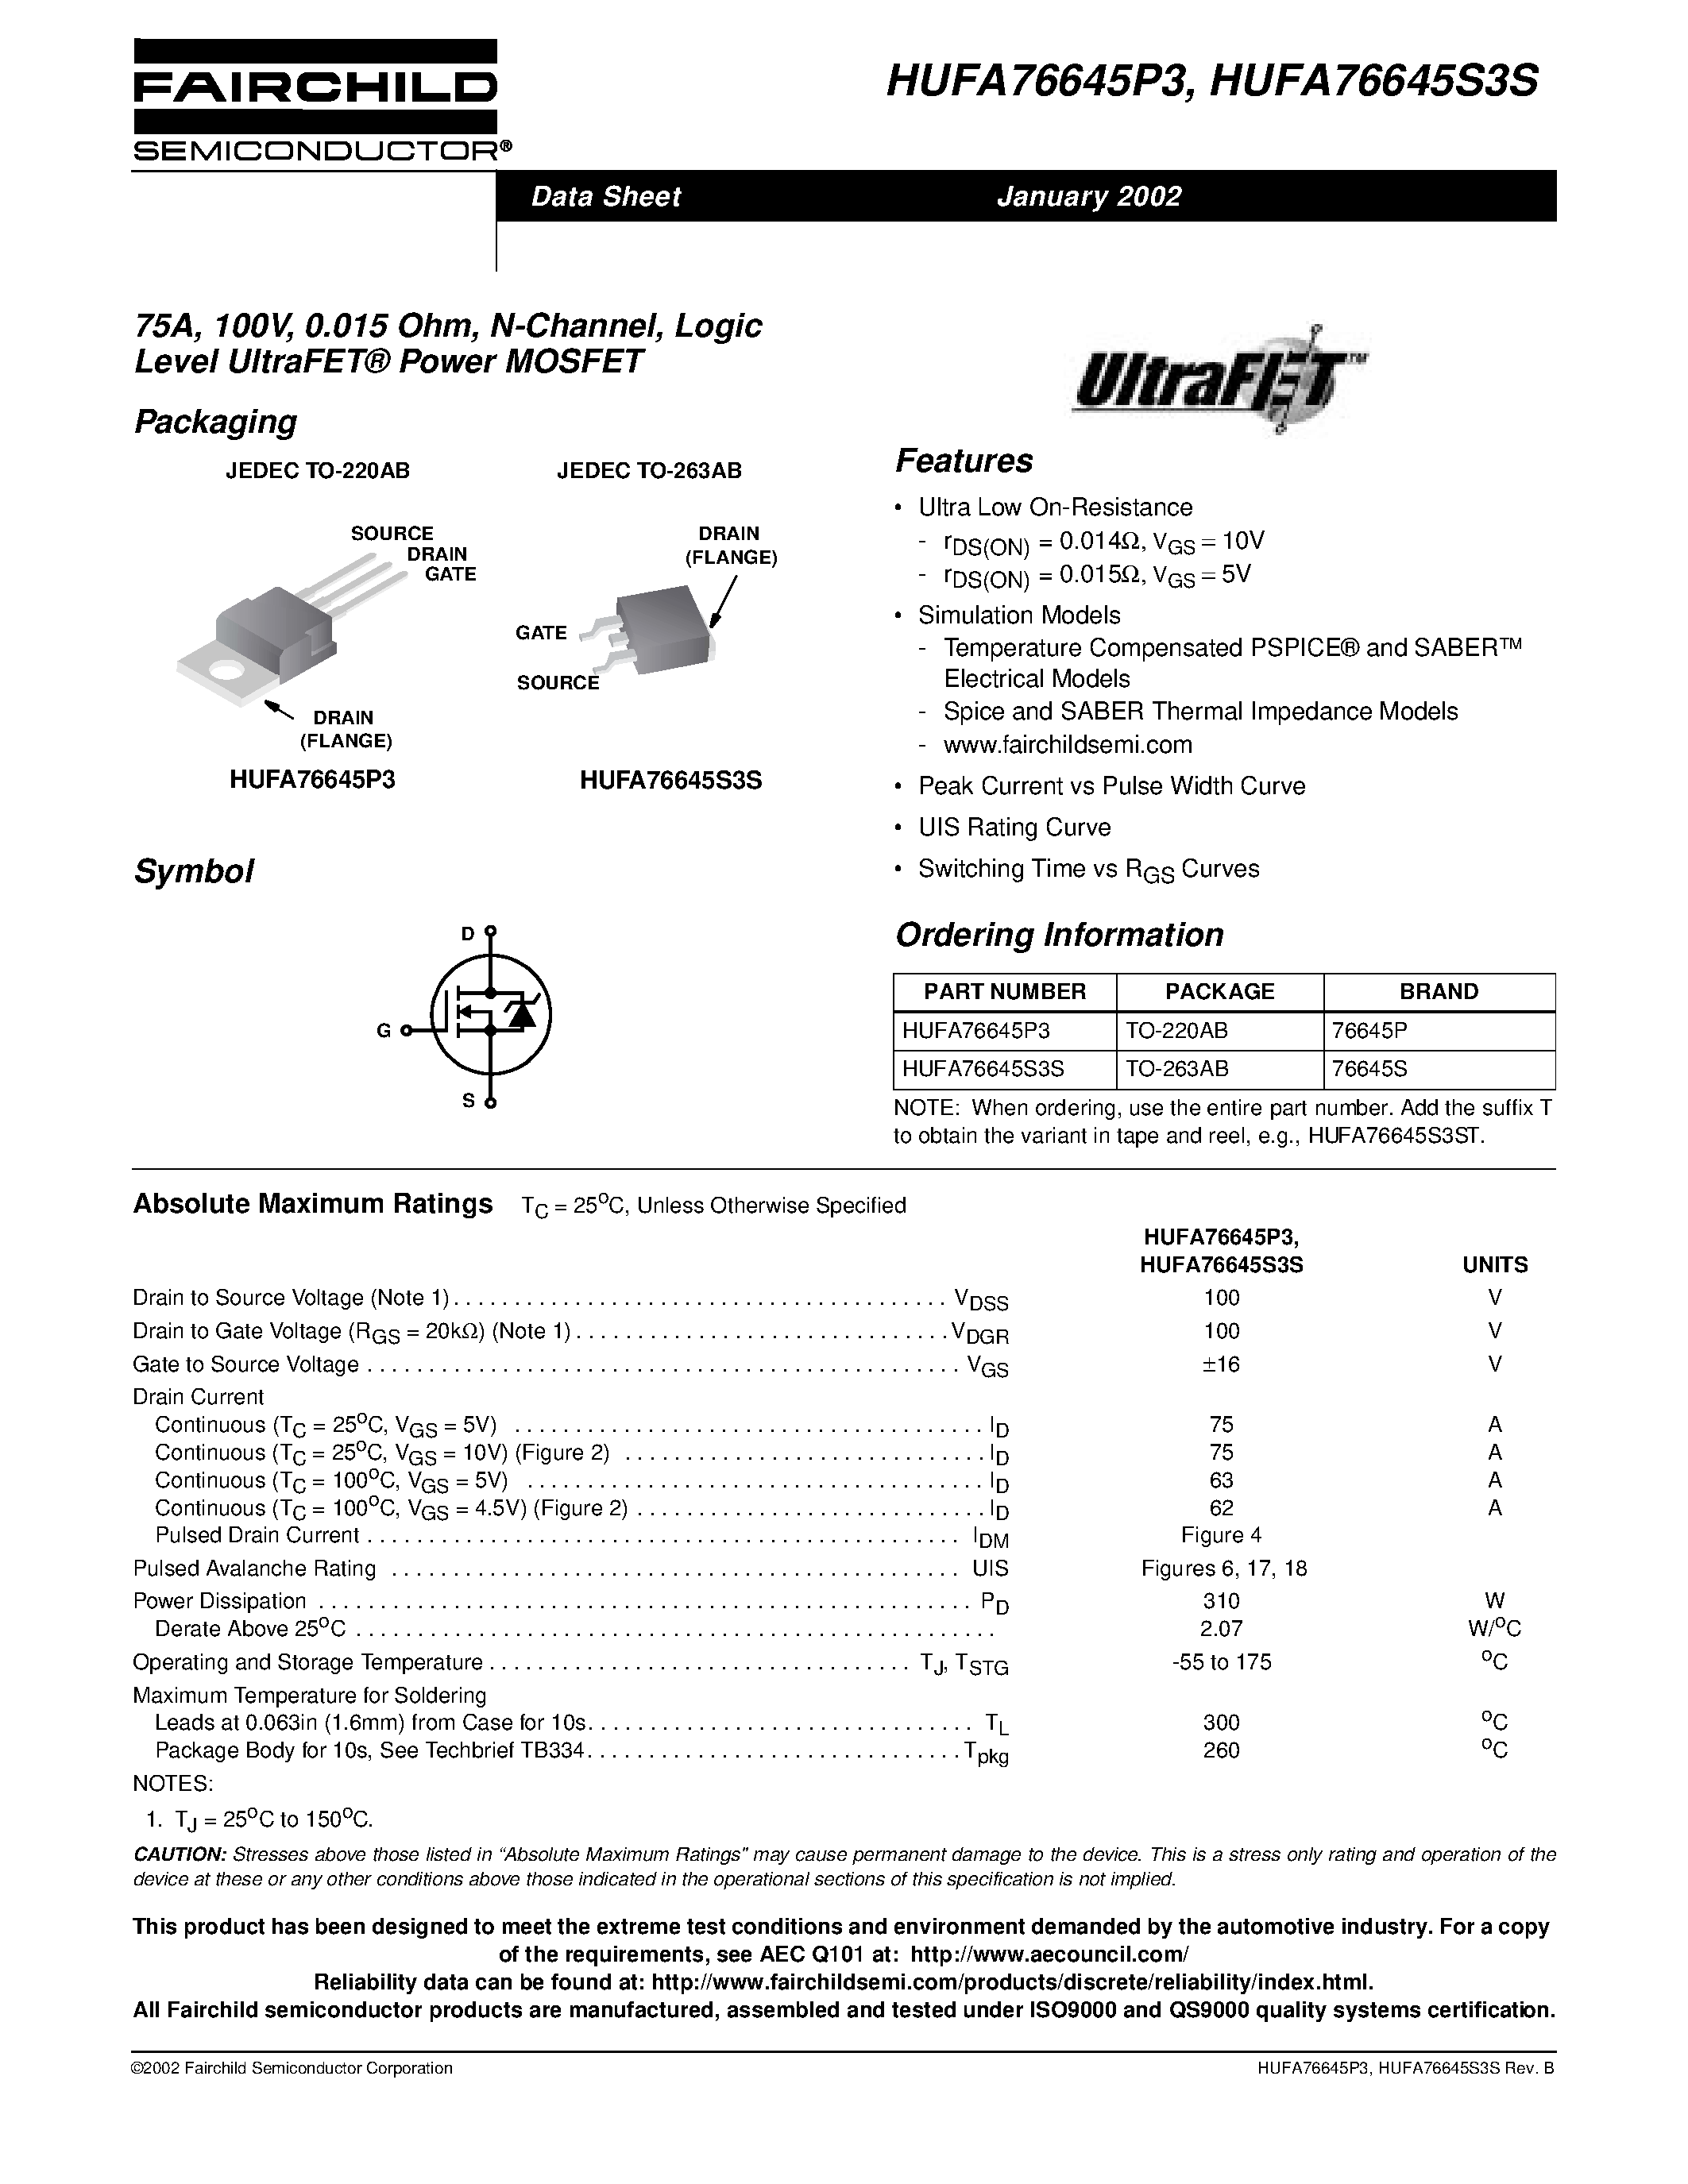 Даташит HUFA76645P3 - 75A/ 100V/ 0.015 Ohm/ N-Channel/ Logic Level UltraFET Power MOSFET страница 1